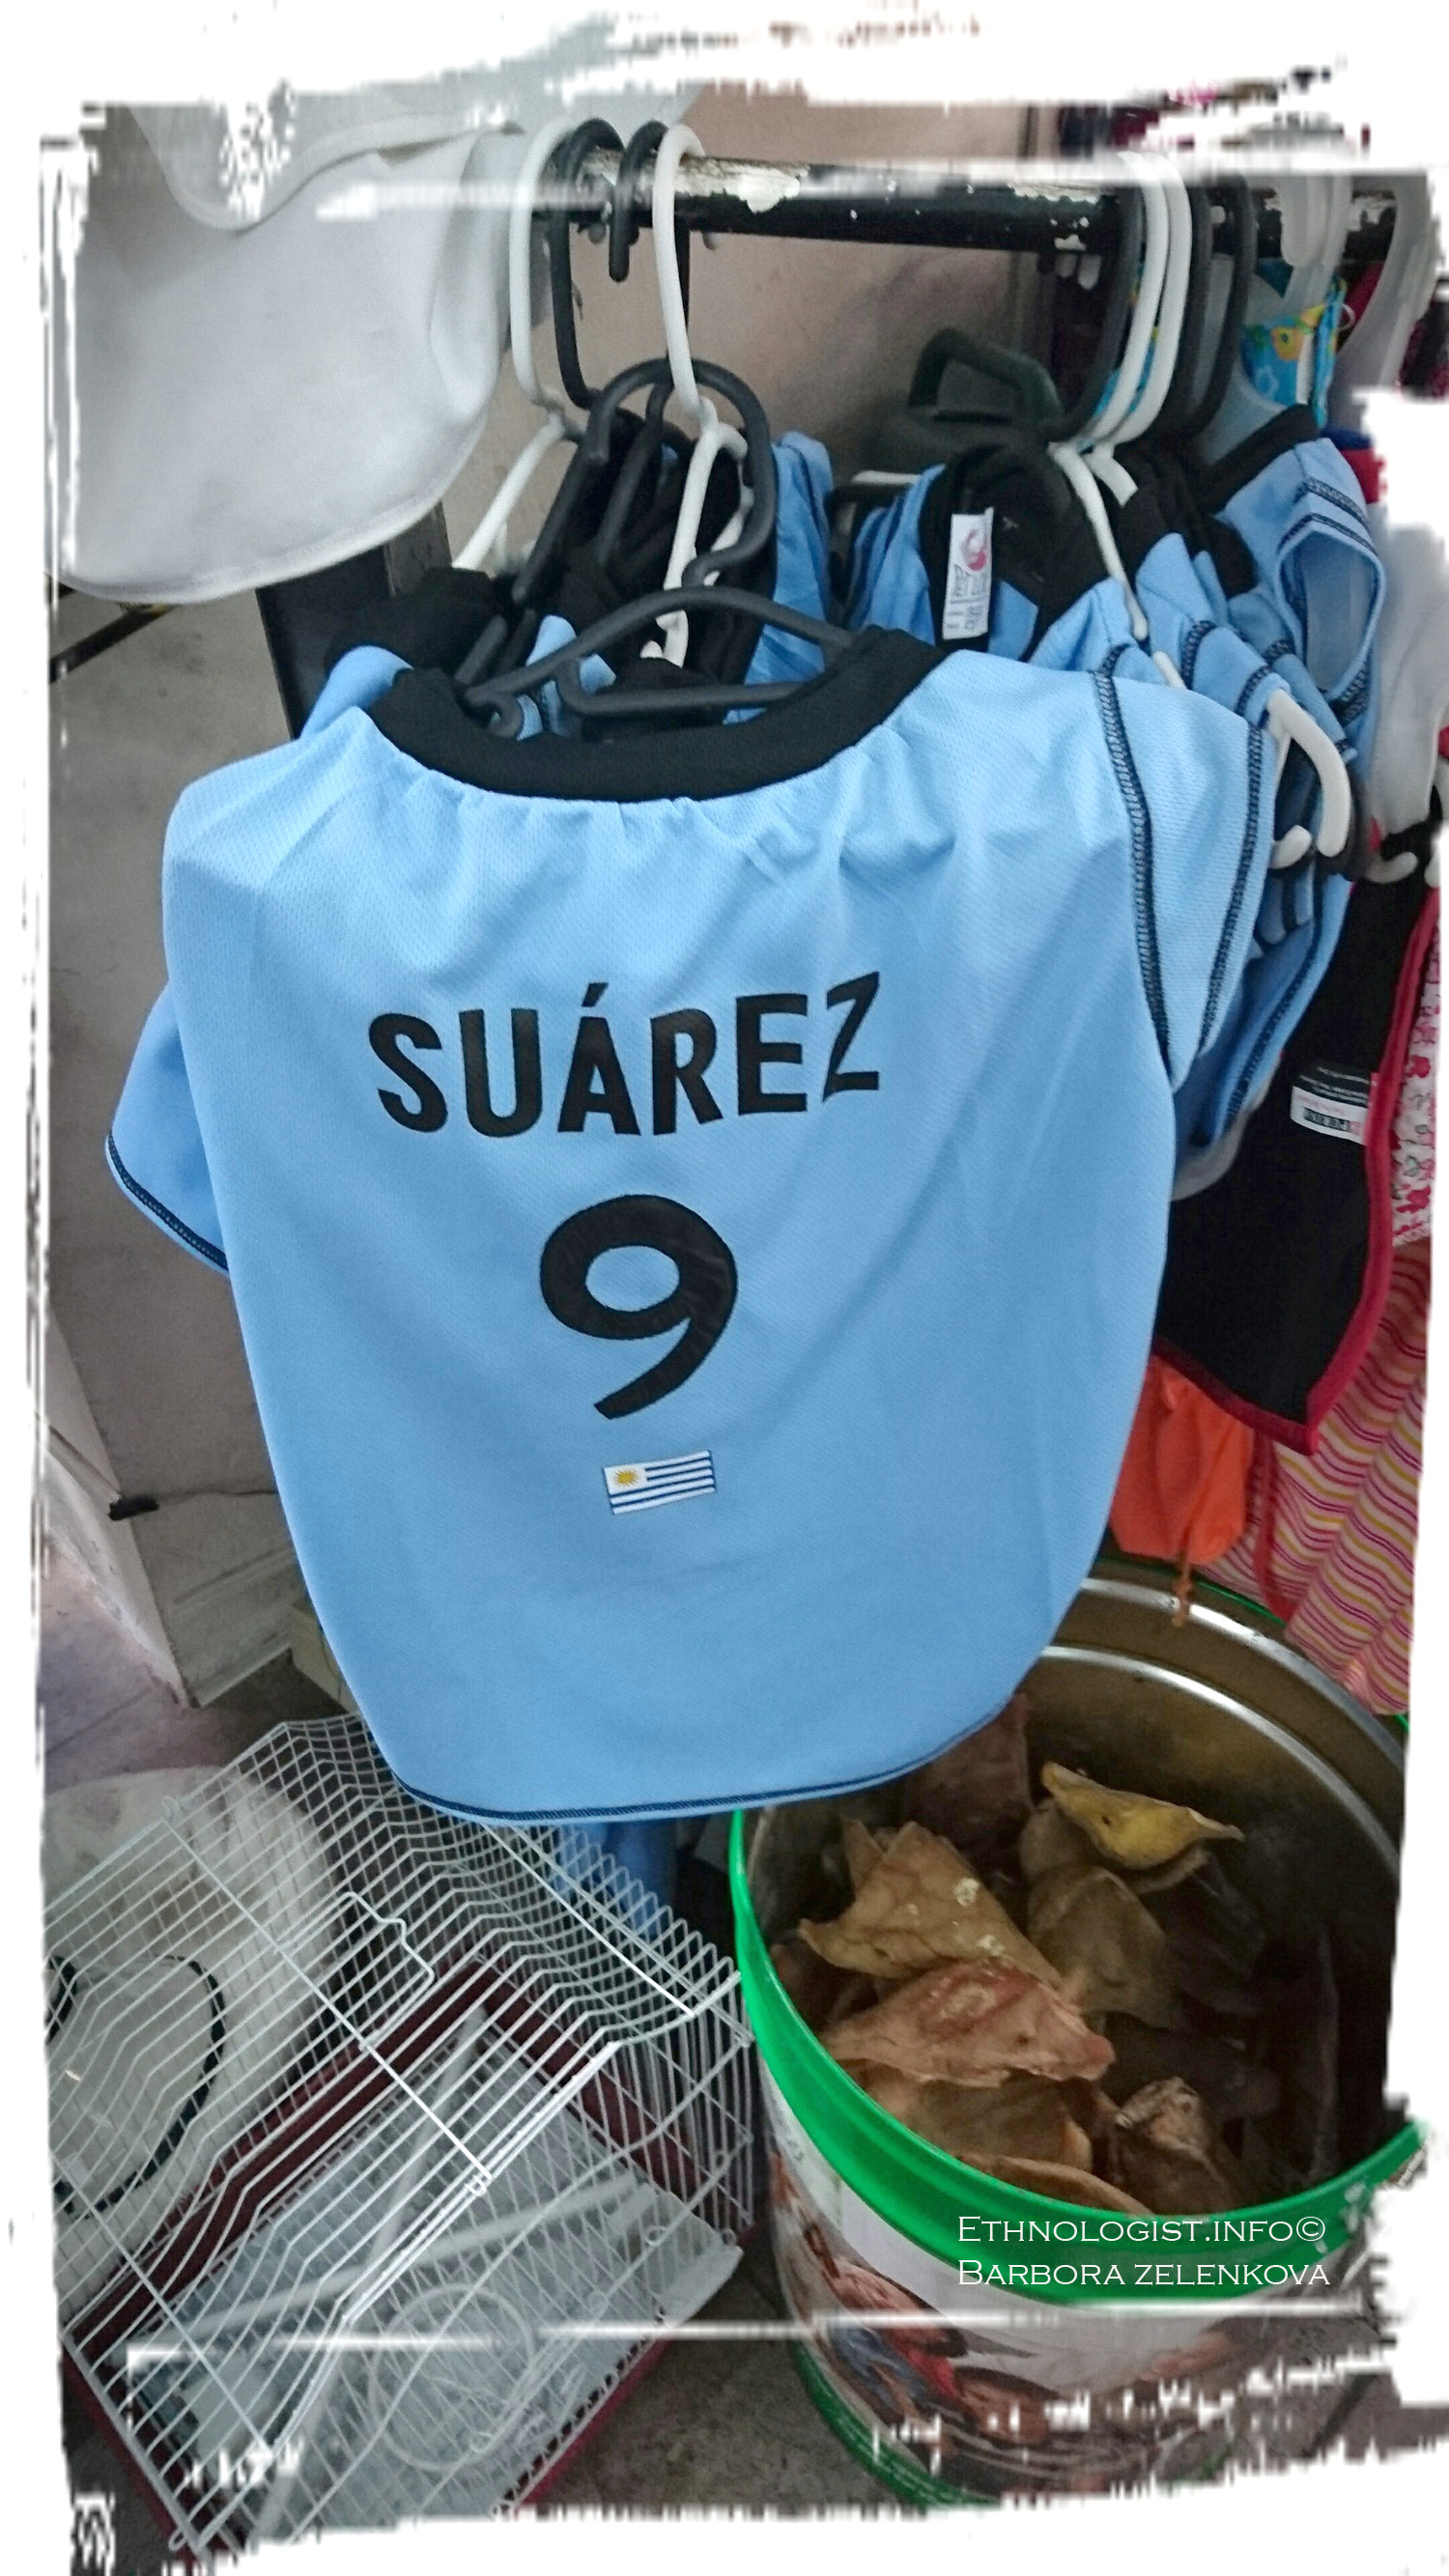 Fotbalový psí dres se jménem Suáreze. Foto: Barbora Zelenková, Montevideo, 2016.